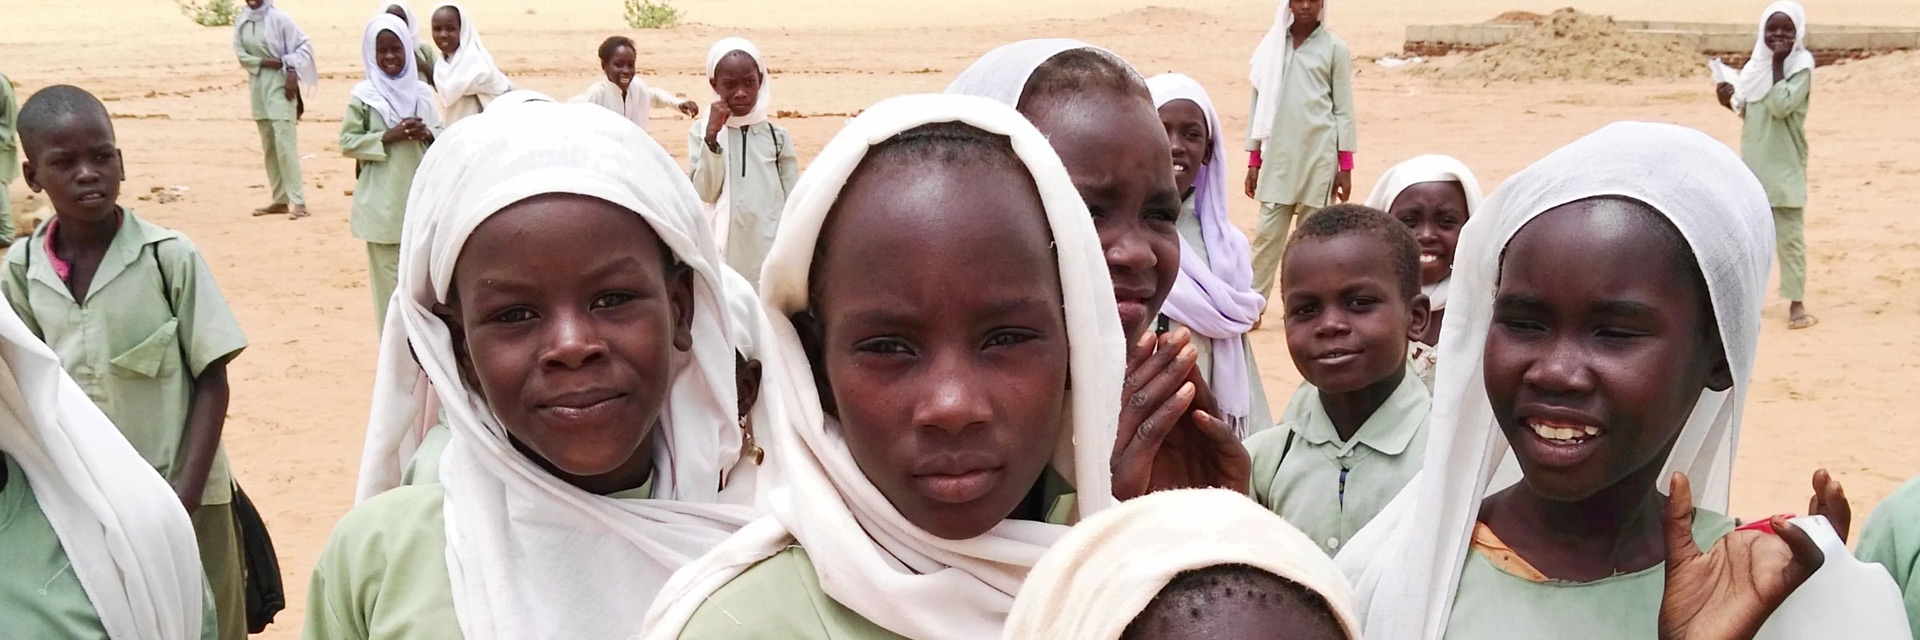 Foto: Schülerinnen auf einem Sandplatz im Sudan